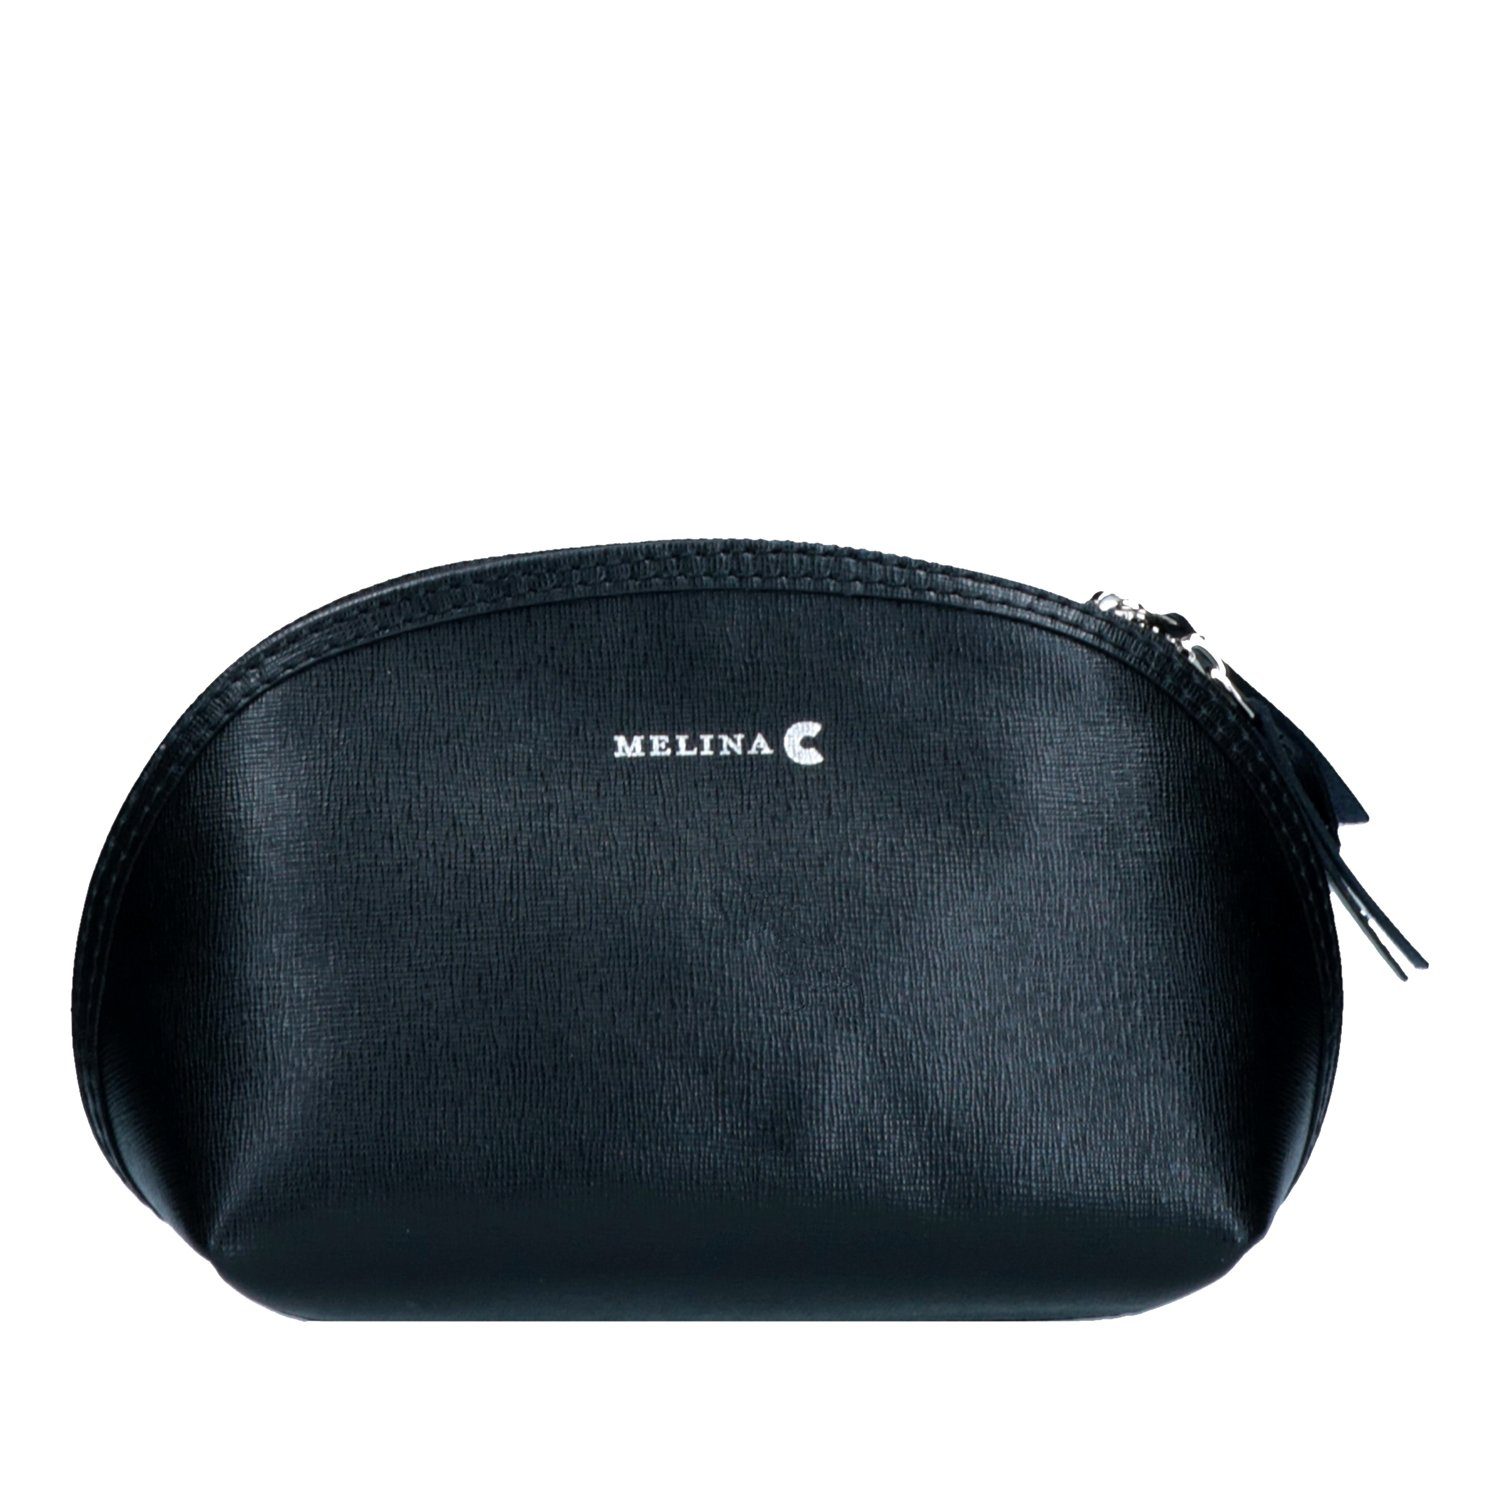 Melina C Kosmetiktasche, Melina C Echtleder Tasche Umhängetasche Schulter Verstellbare Träger Schwarz